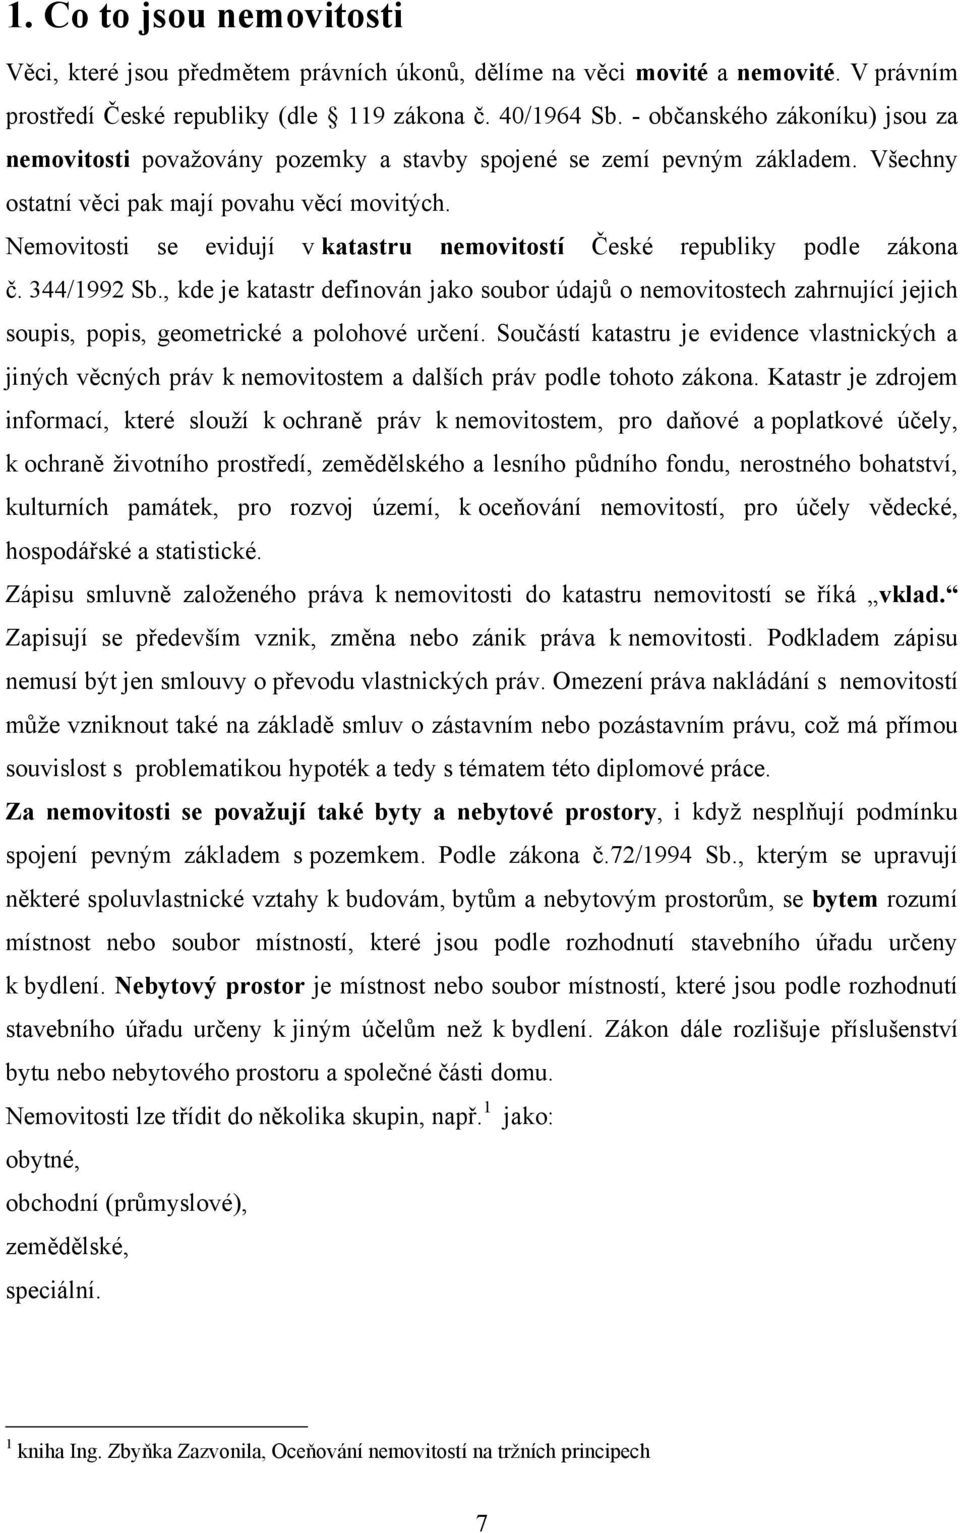 Nemovitosti se evidují v katastru nemovitostí České republiky podle zákona č. 344/1992 Sb.